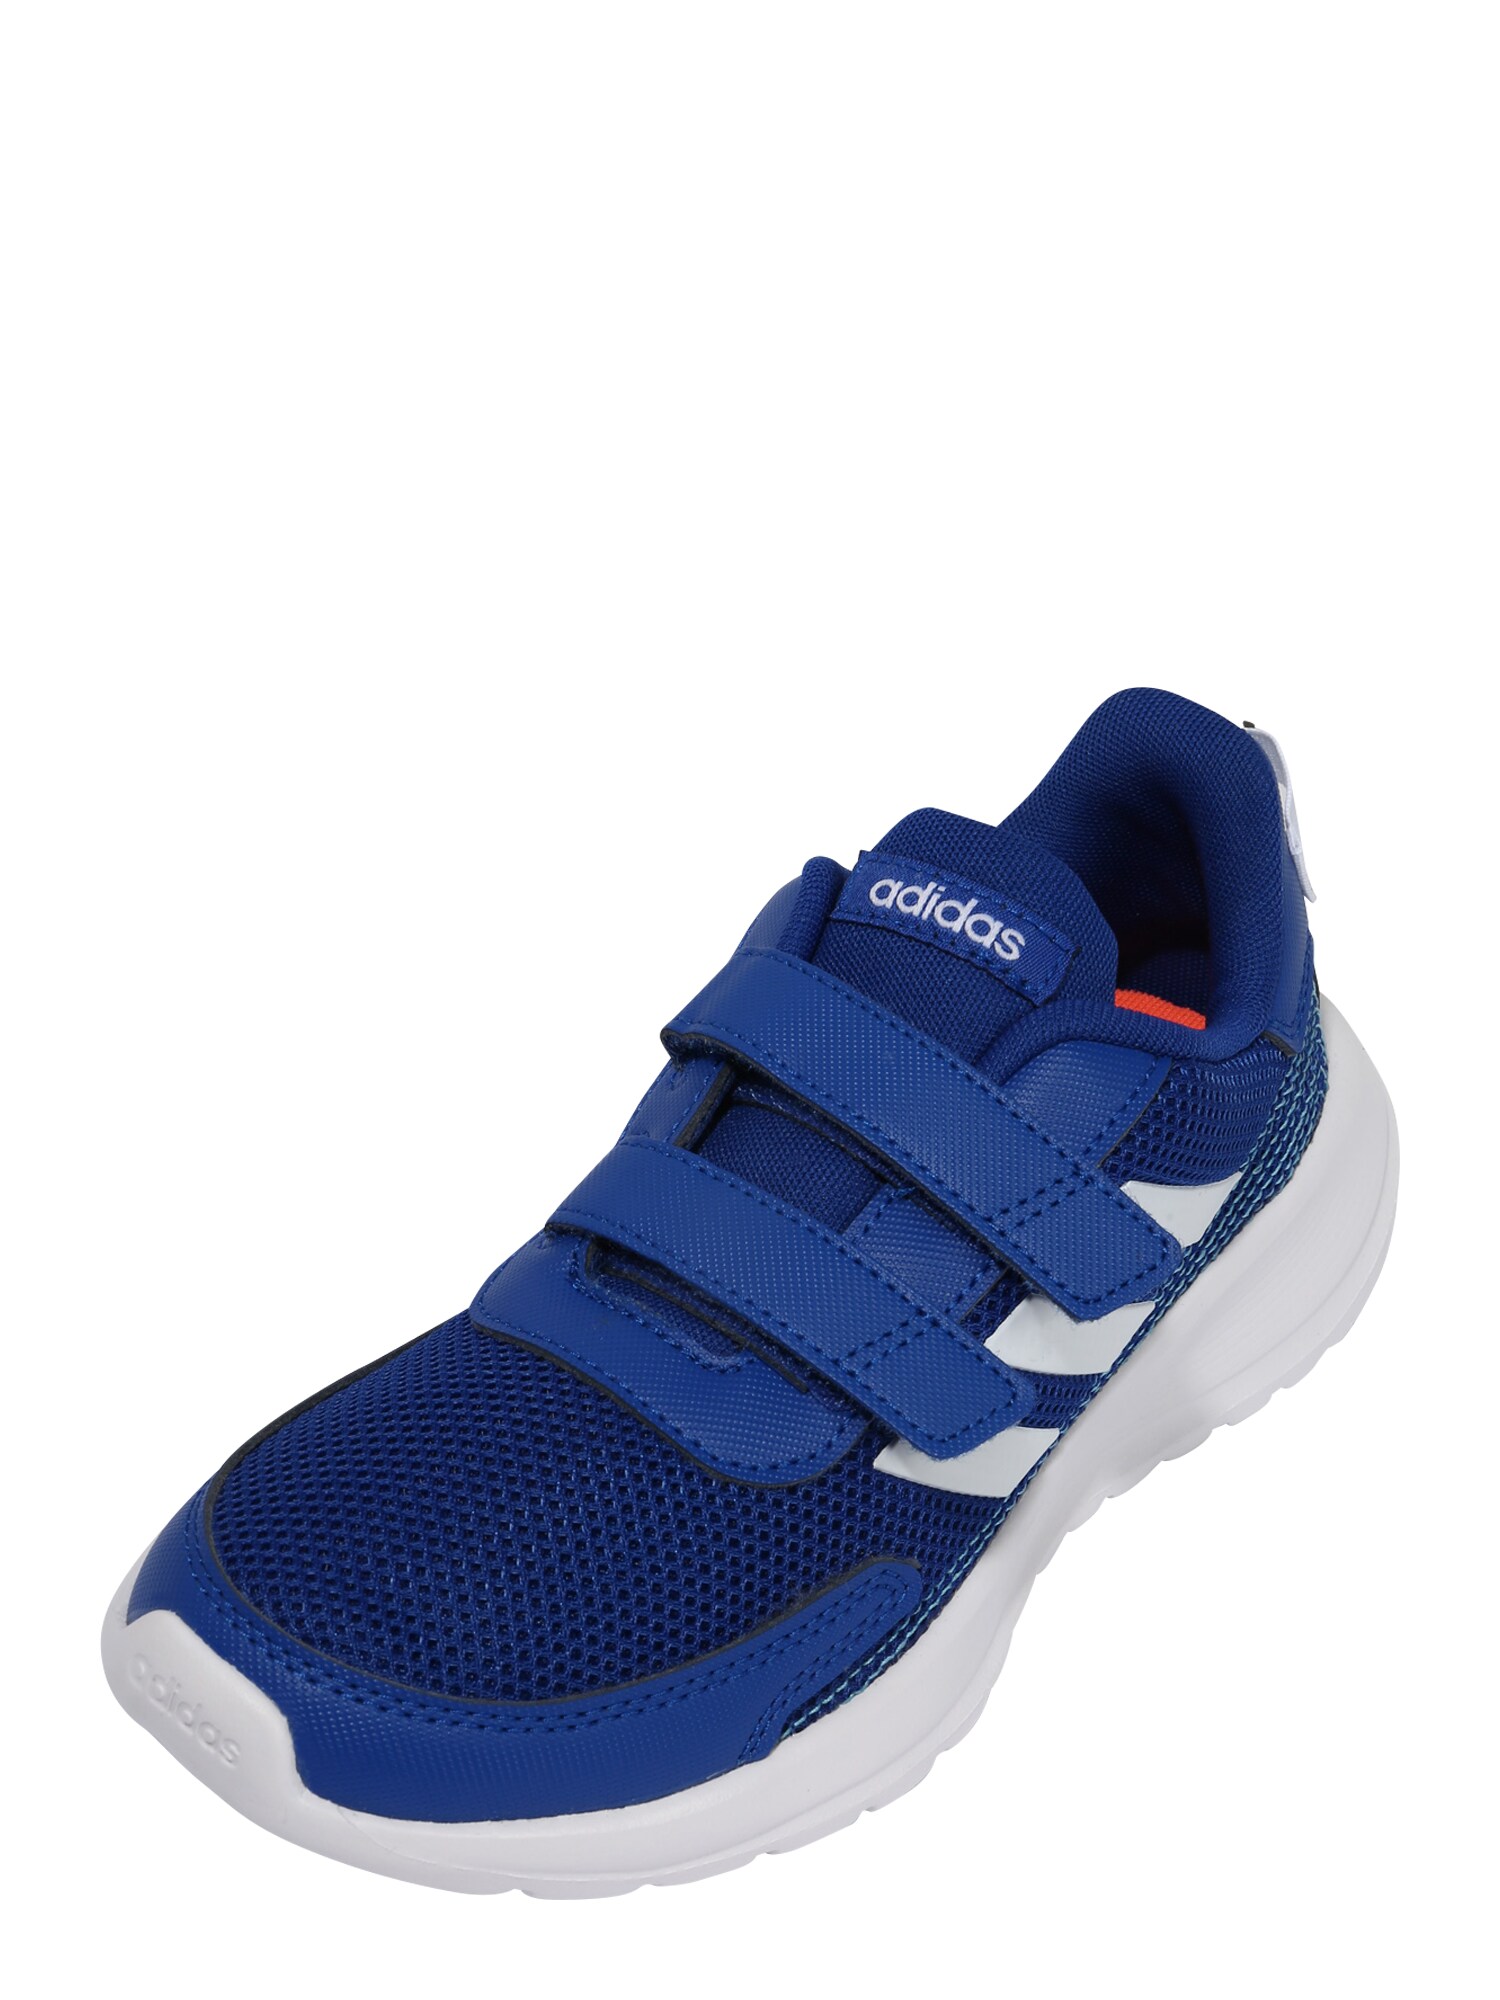 ADIDAS PERFORMANCE Sportiniai batai  sodri mėlyna („karališka“) / balta